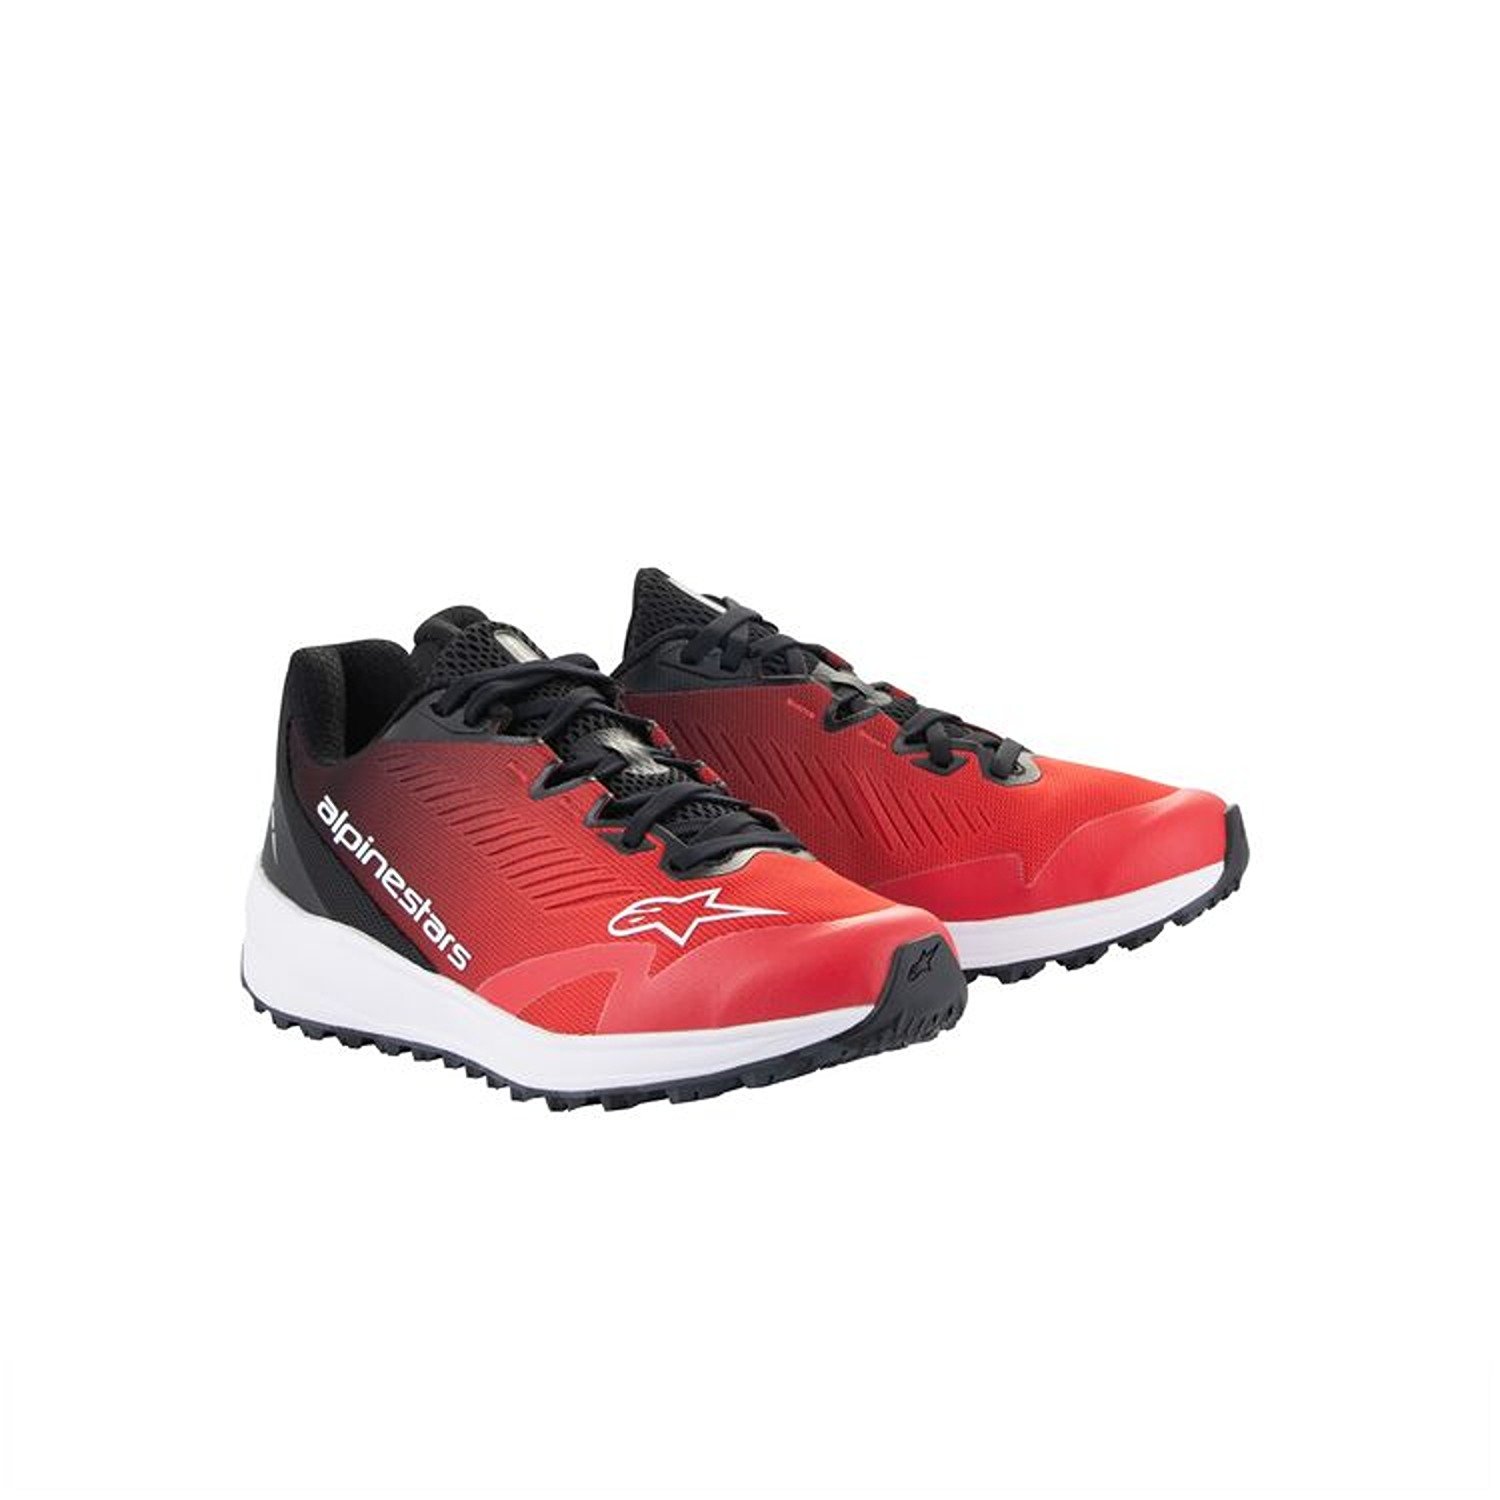 Image of Alpinestars Meta Road V2 Shoes Red Black White Größe US 45